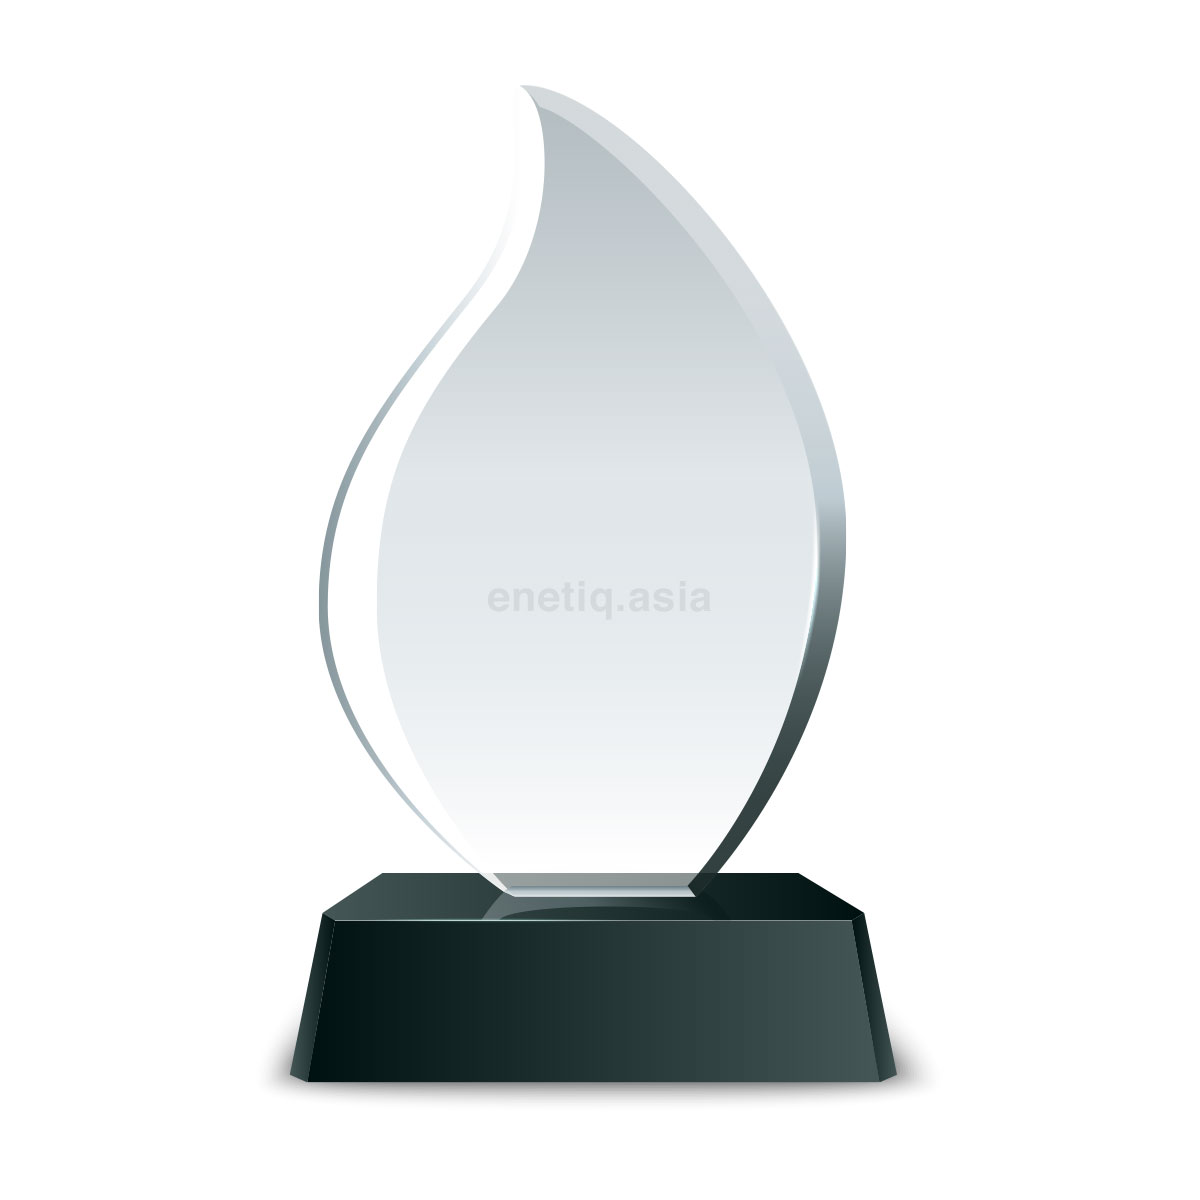 teardrop-crystal-award-trophy